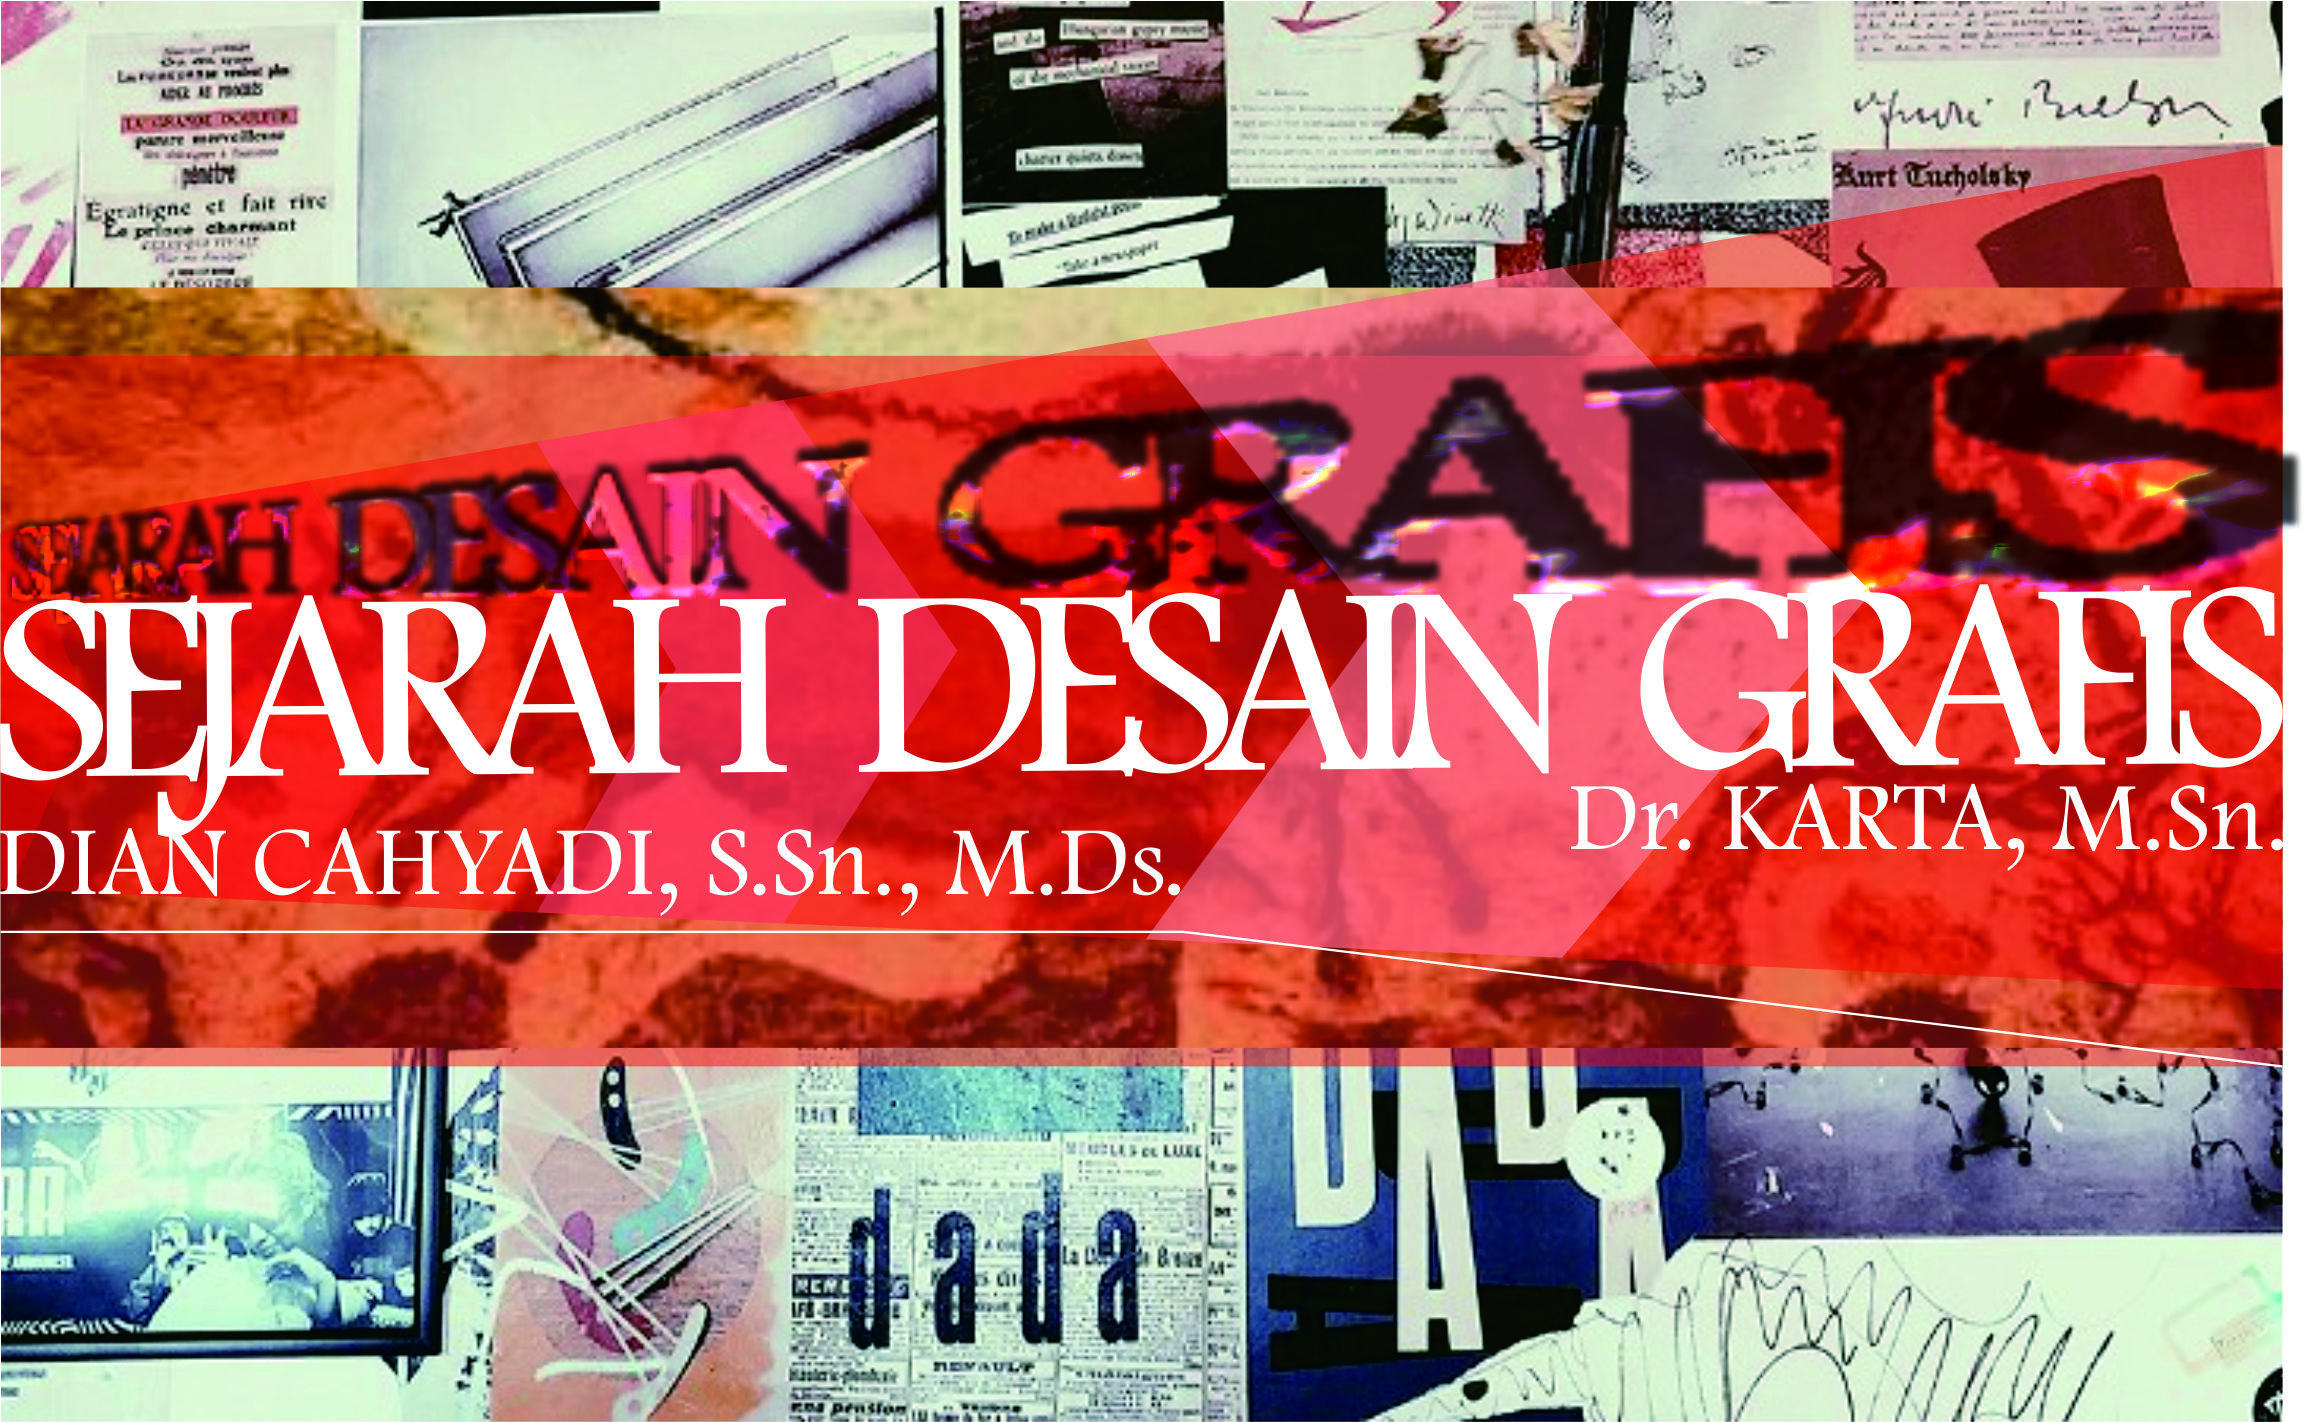 20211-SEJARAH DESAIN GRAFIS copy 2